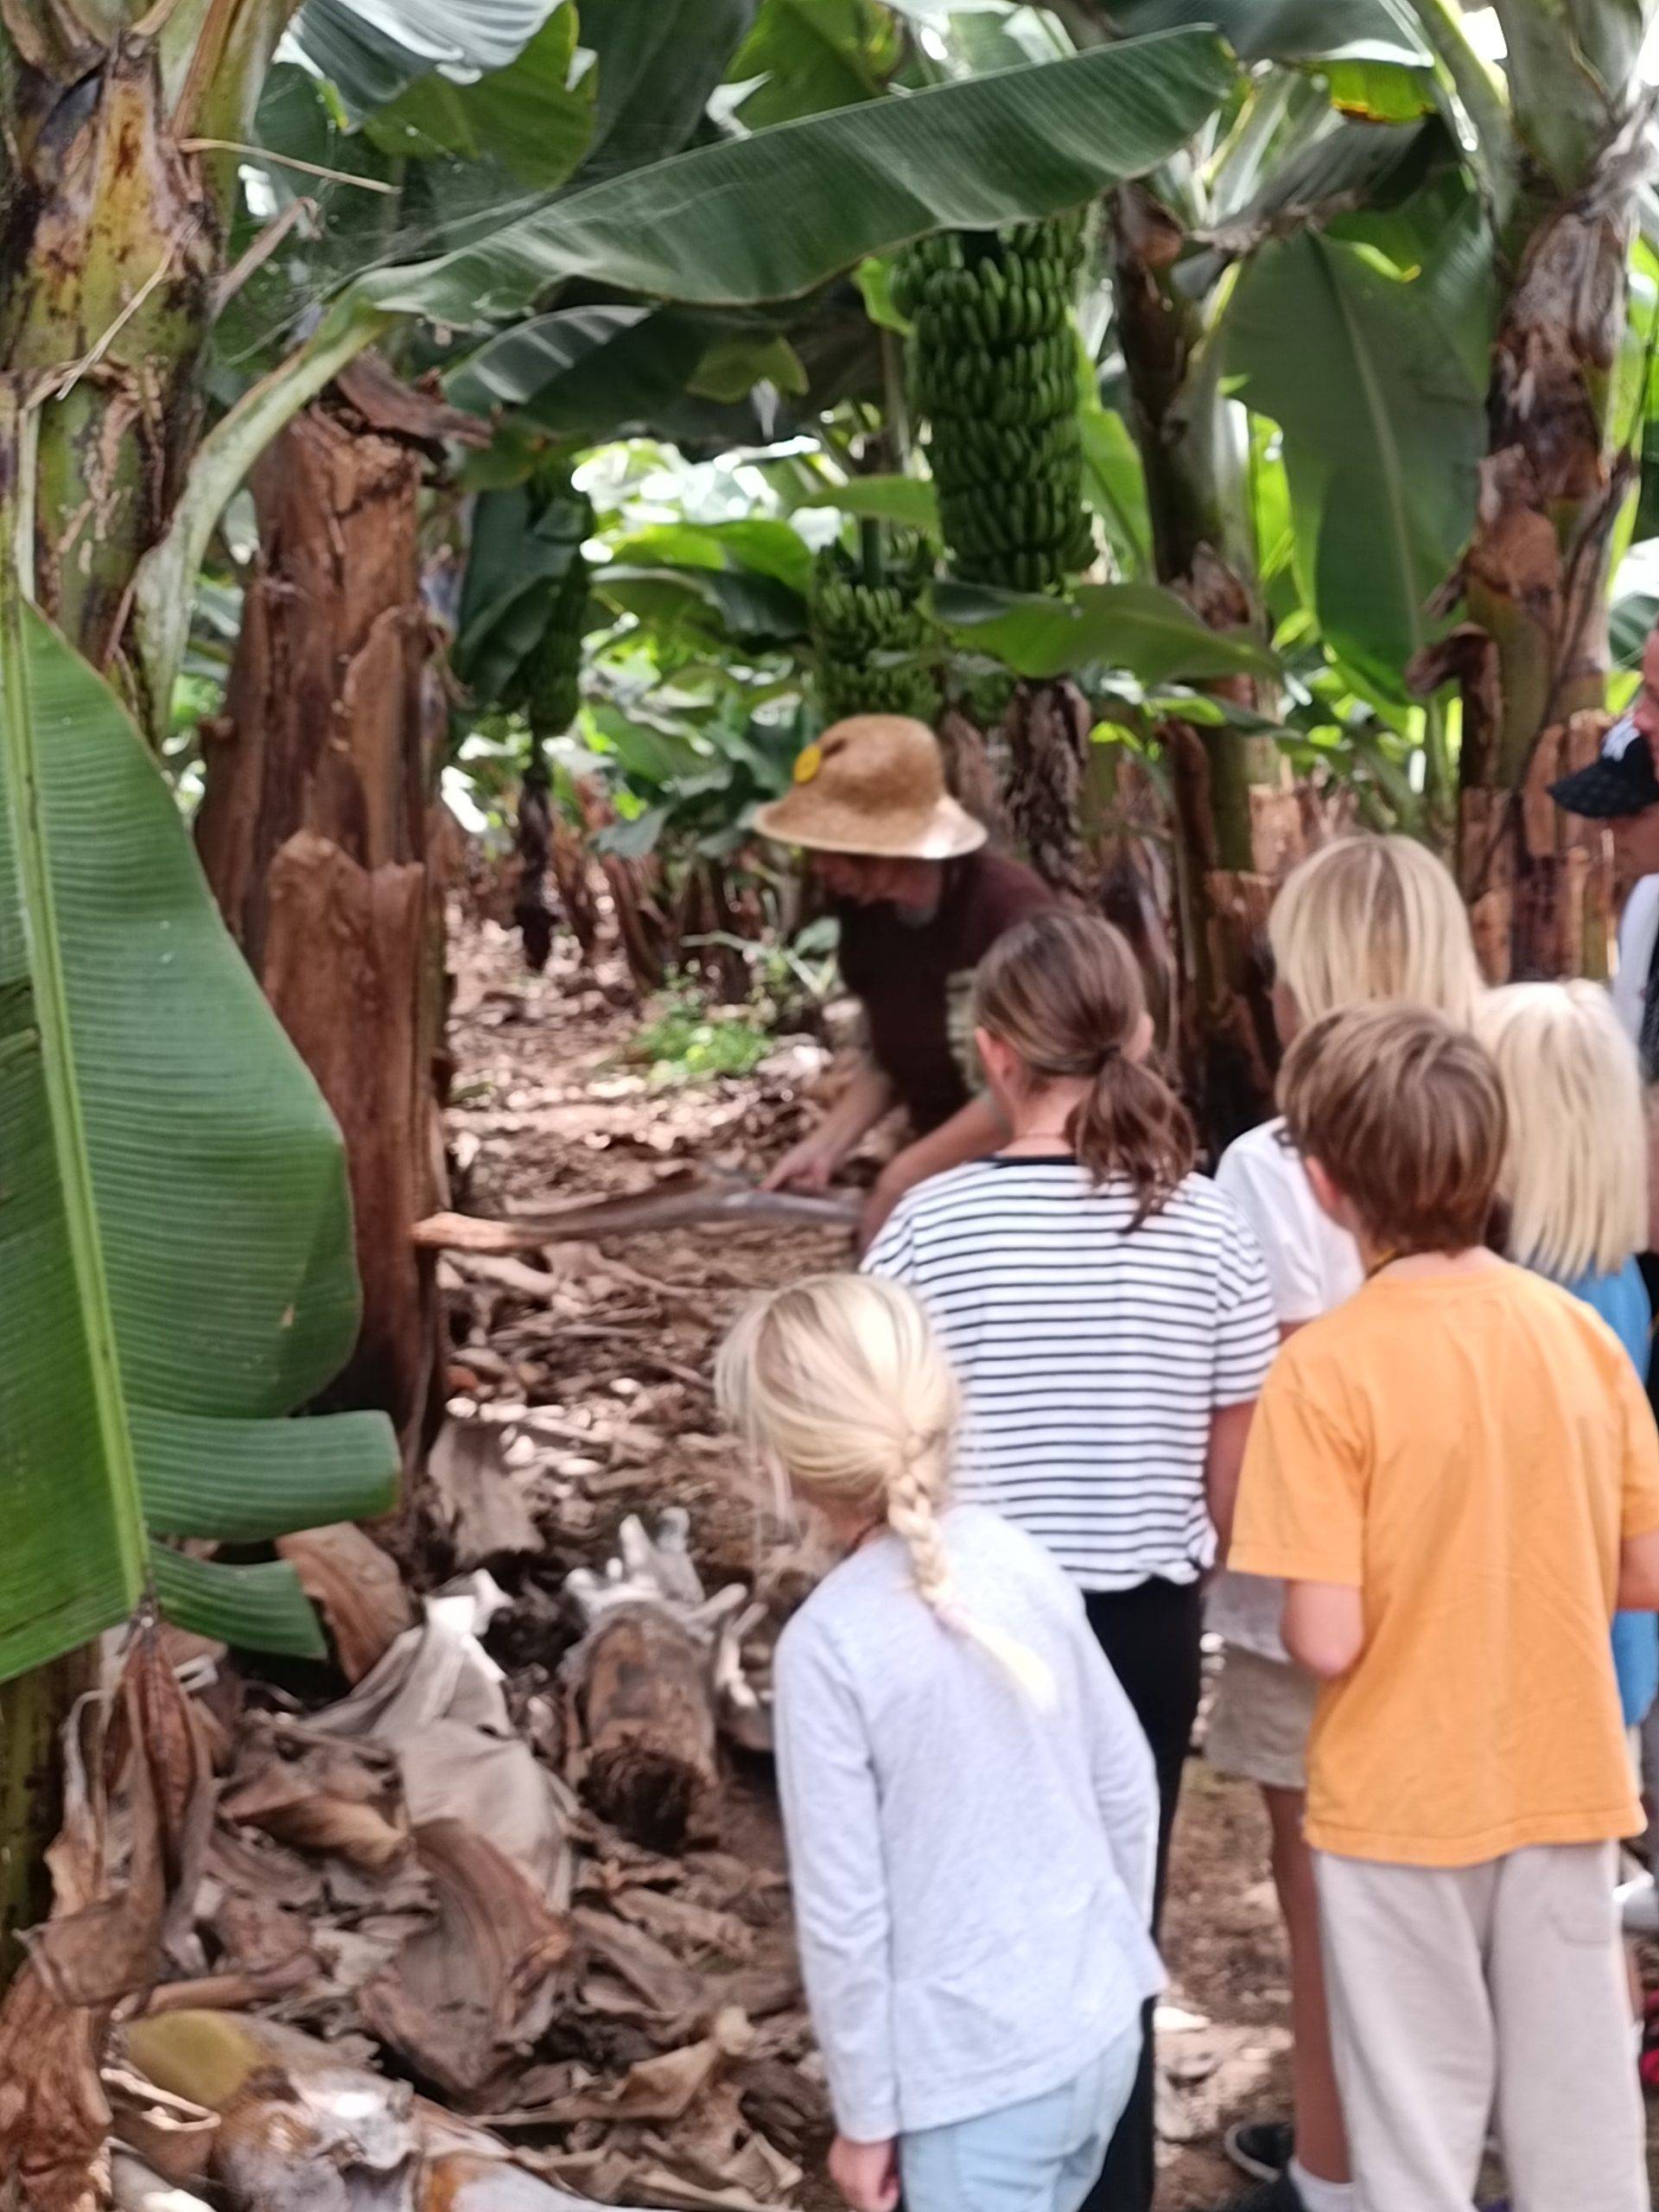 Ekskursija po bananų plantaciją Tenerifėje